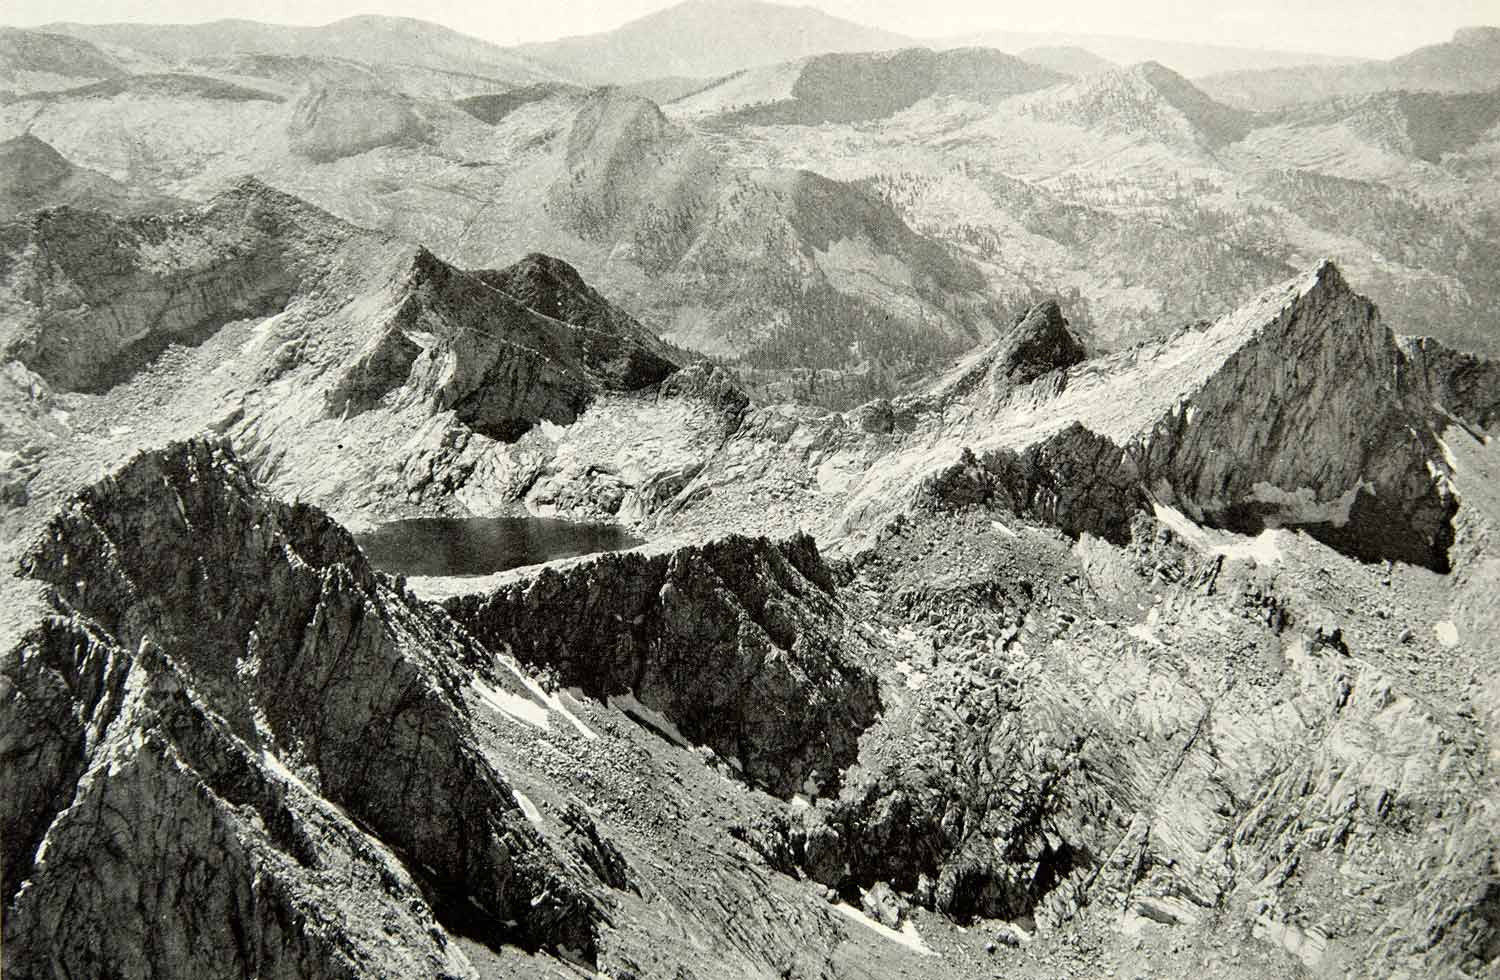 1924 Print Sierra Nevada Mountain Range Mount Whitney Aerial View Image NGM9